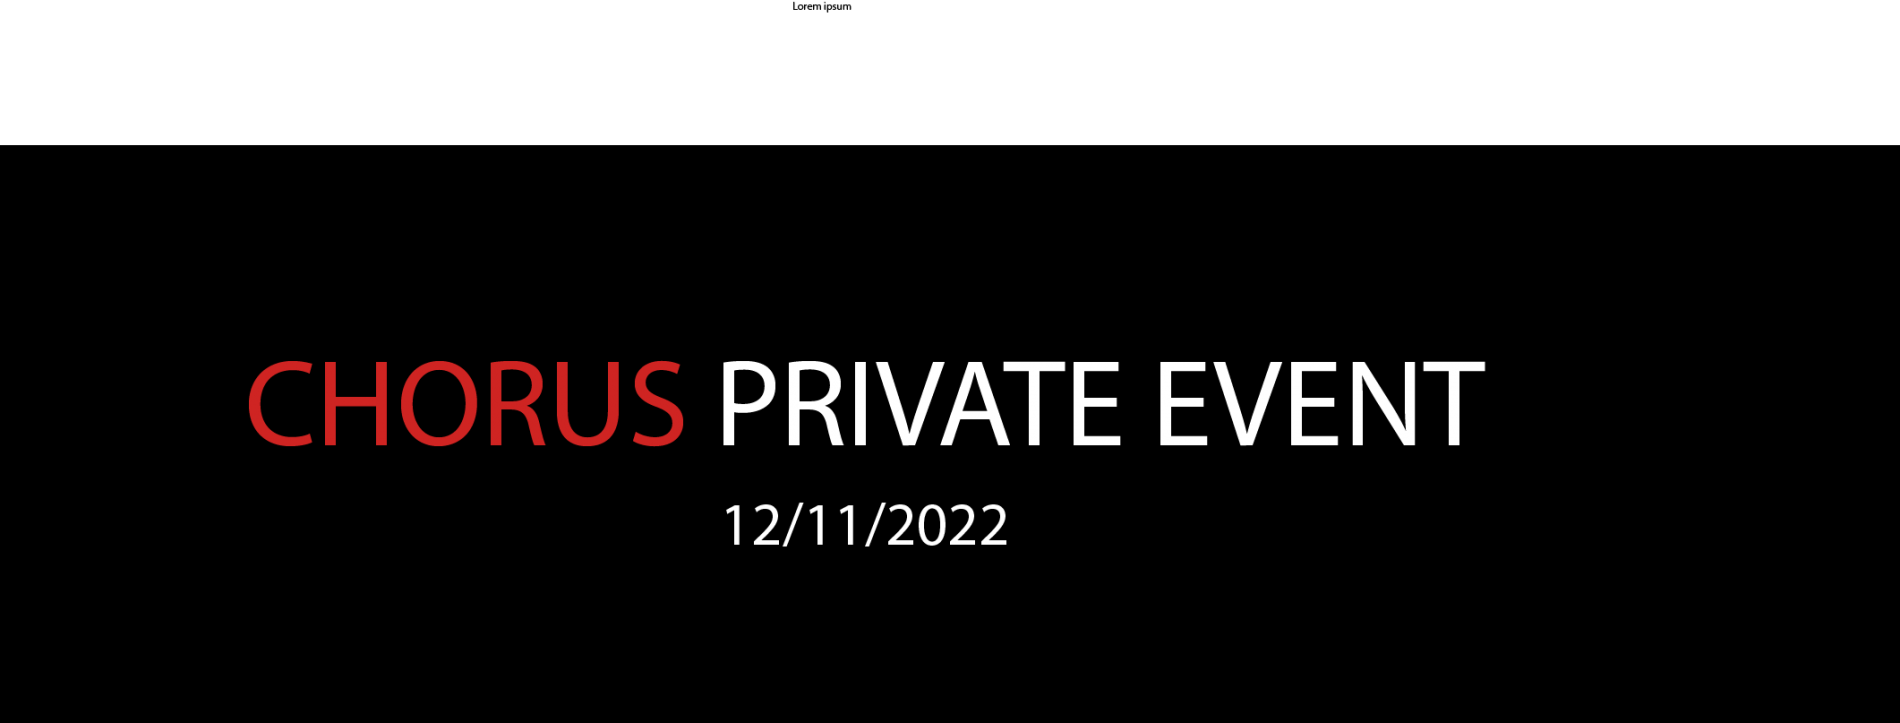 CHORUS PRIVATE EVENT 12/11/2022